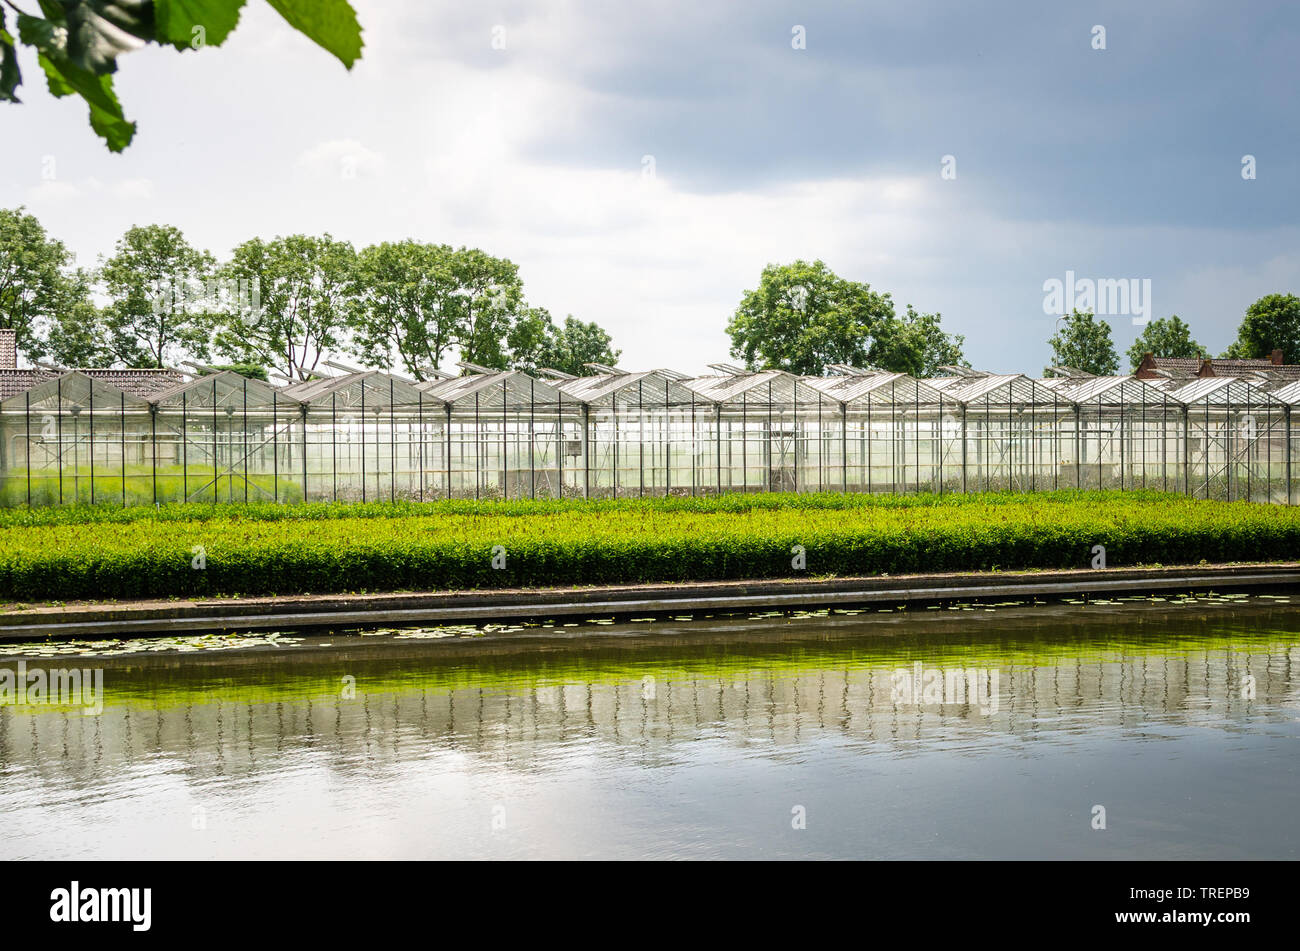 Serre per la coltivazione dei fiori nella campagna dei Paesi Bassi in primavera Foto Stock